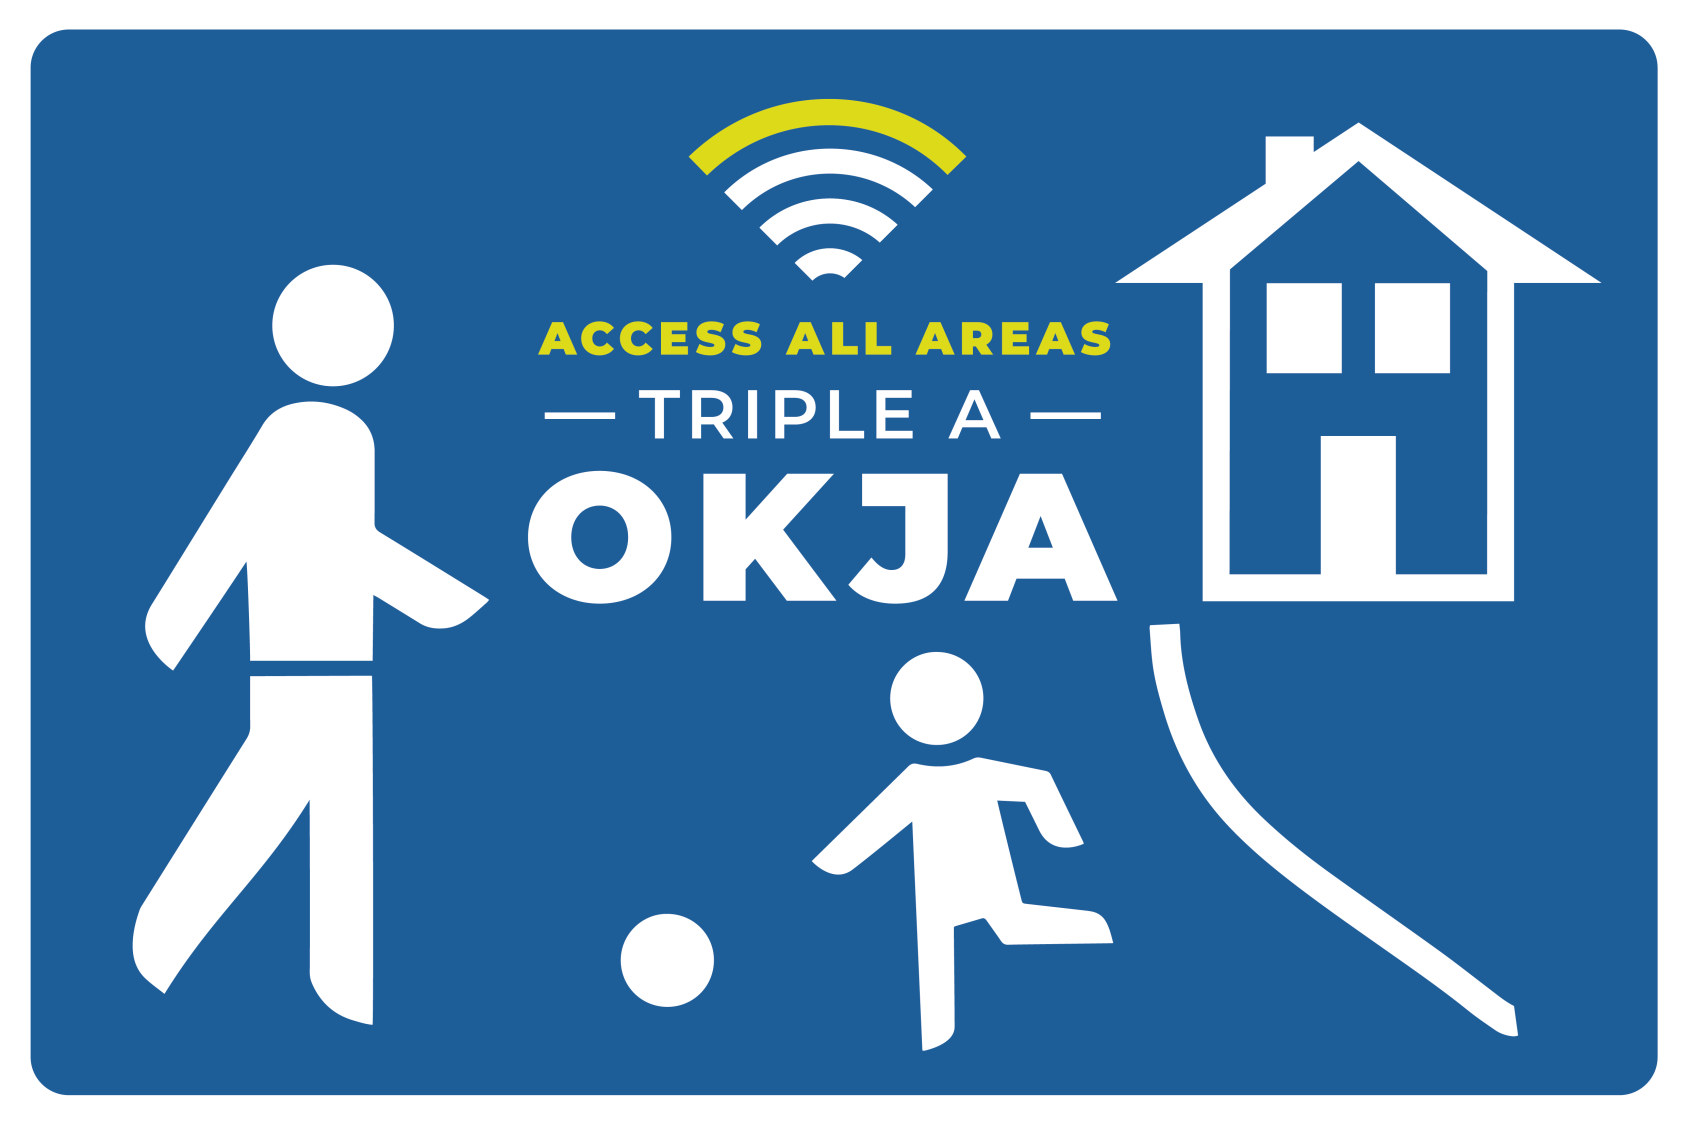 Zu sehen ist ein Bild, welches einem Spielstraßenschild nachempfunden ist und das Logo des Projekts Triple A OKJA darstellt. 